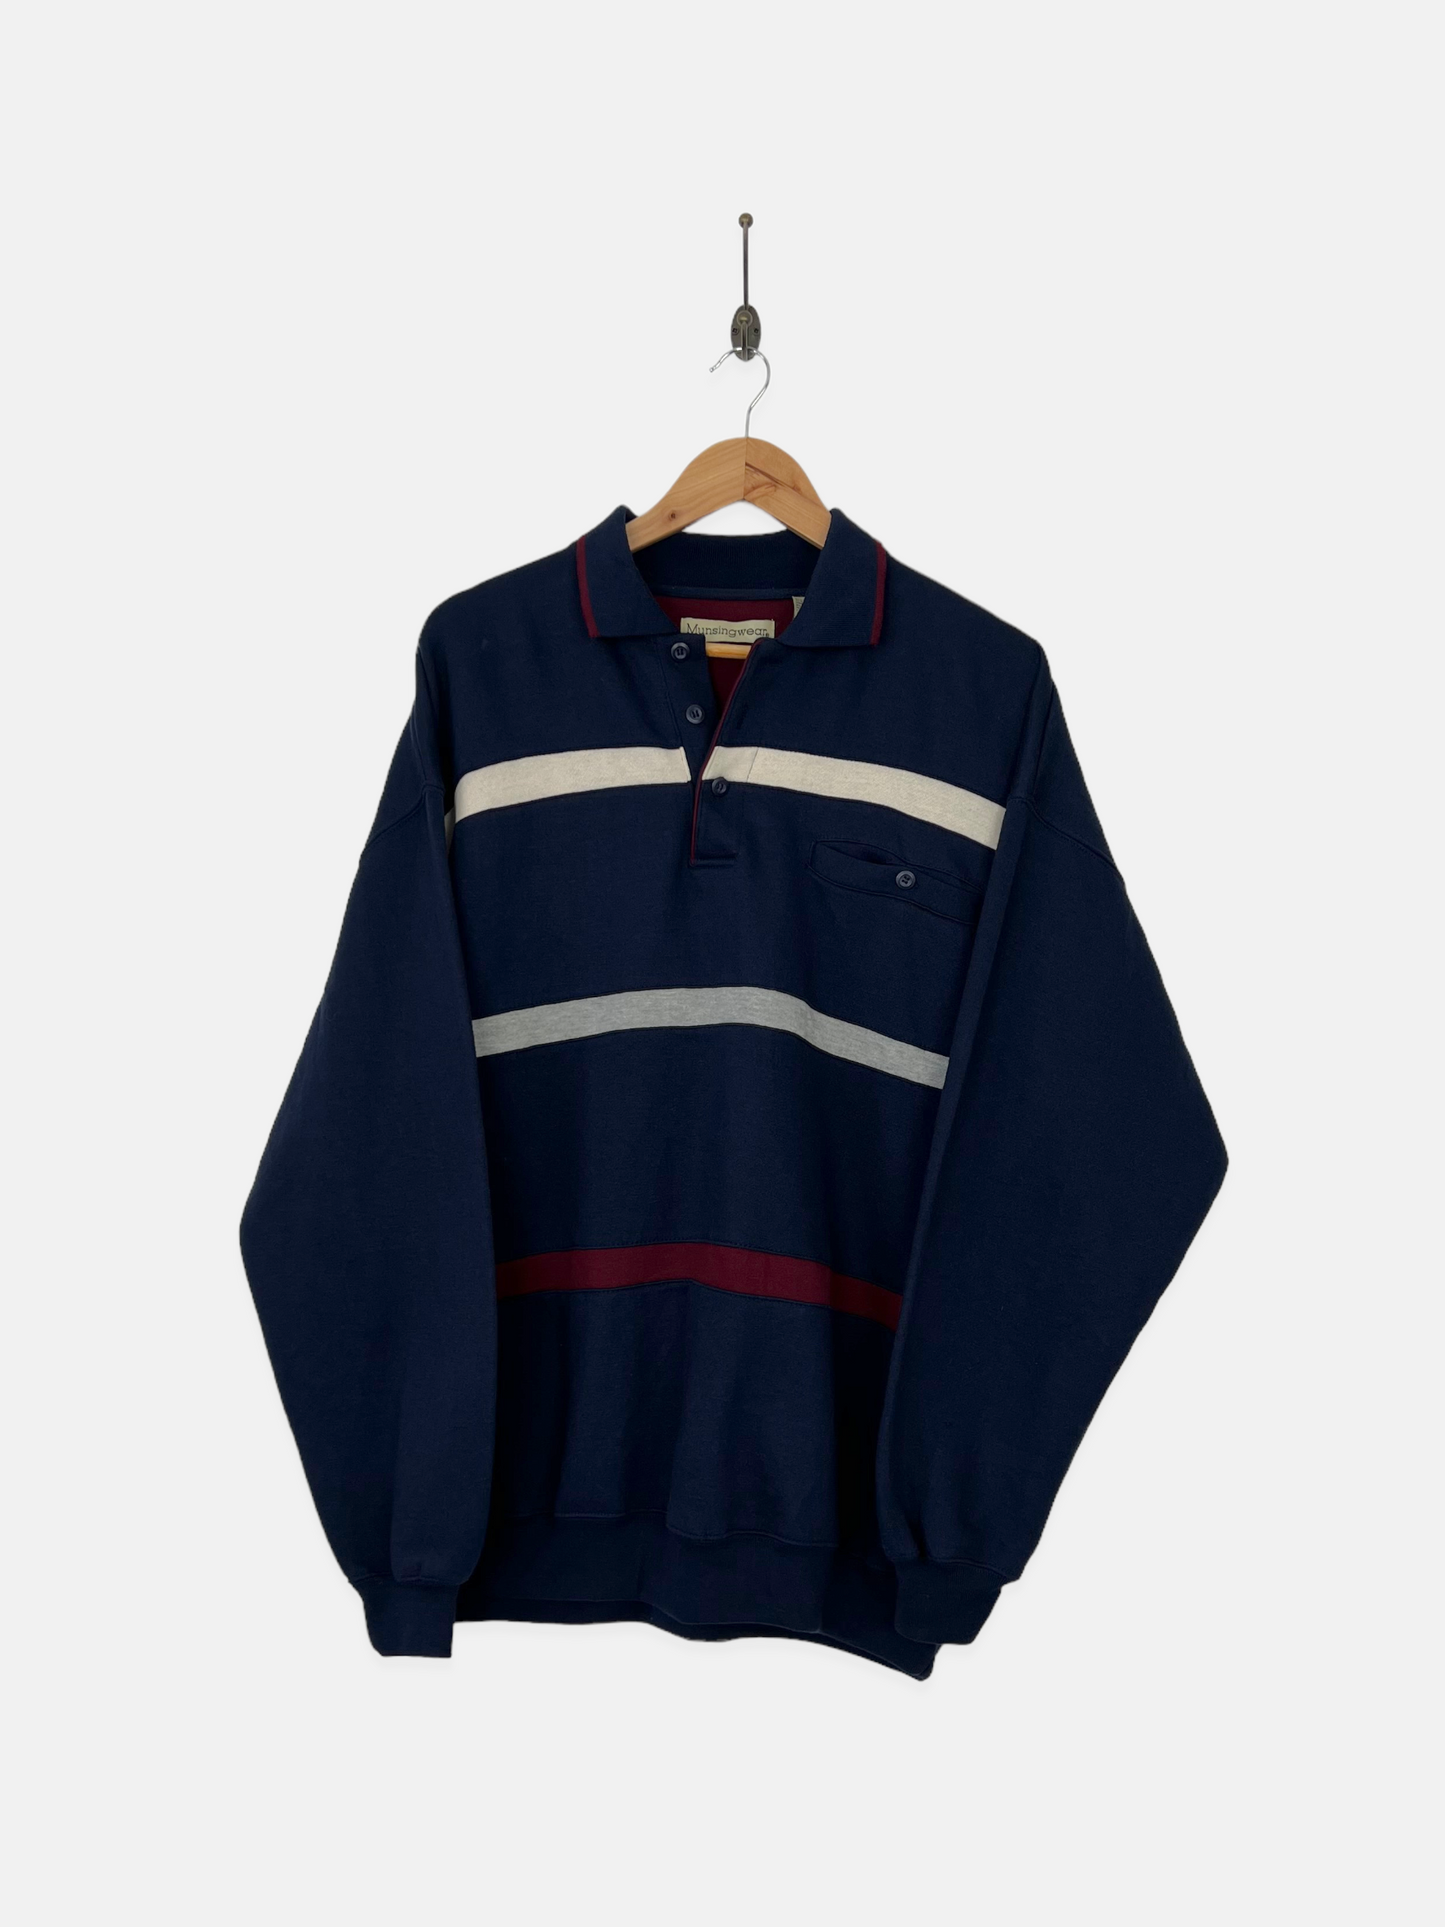 90's Navy Vintage Collared Sweatshirt Size L-XL